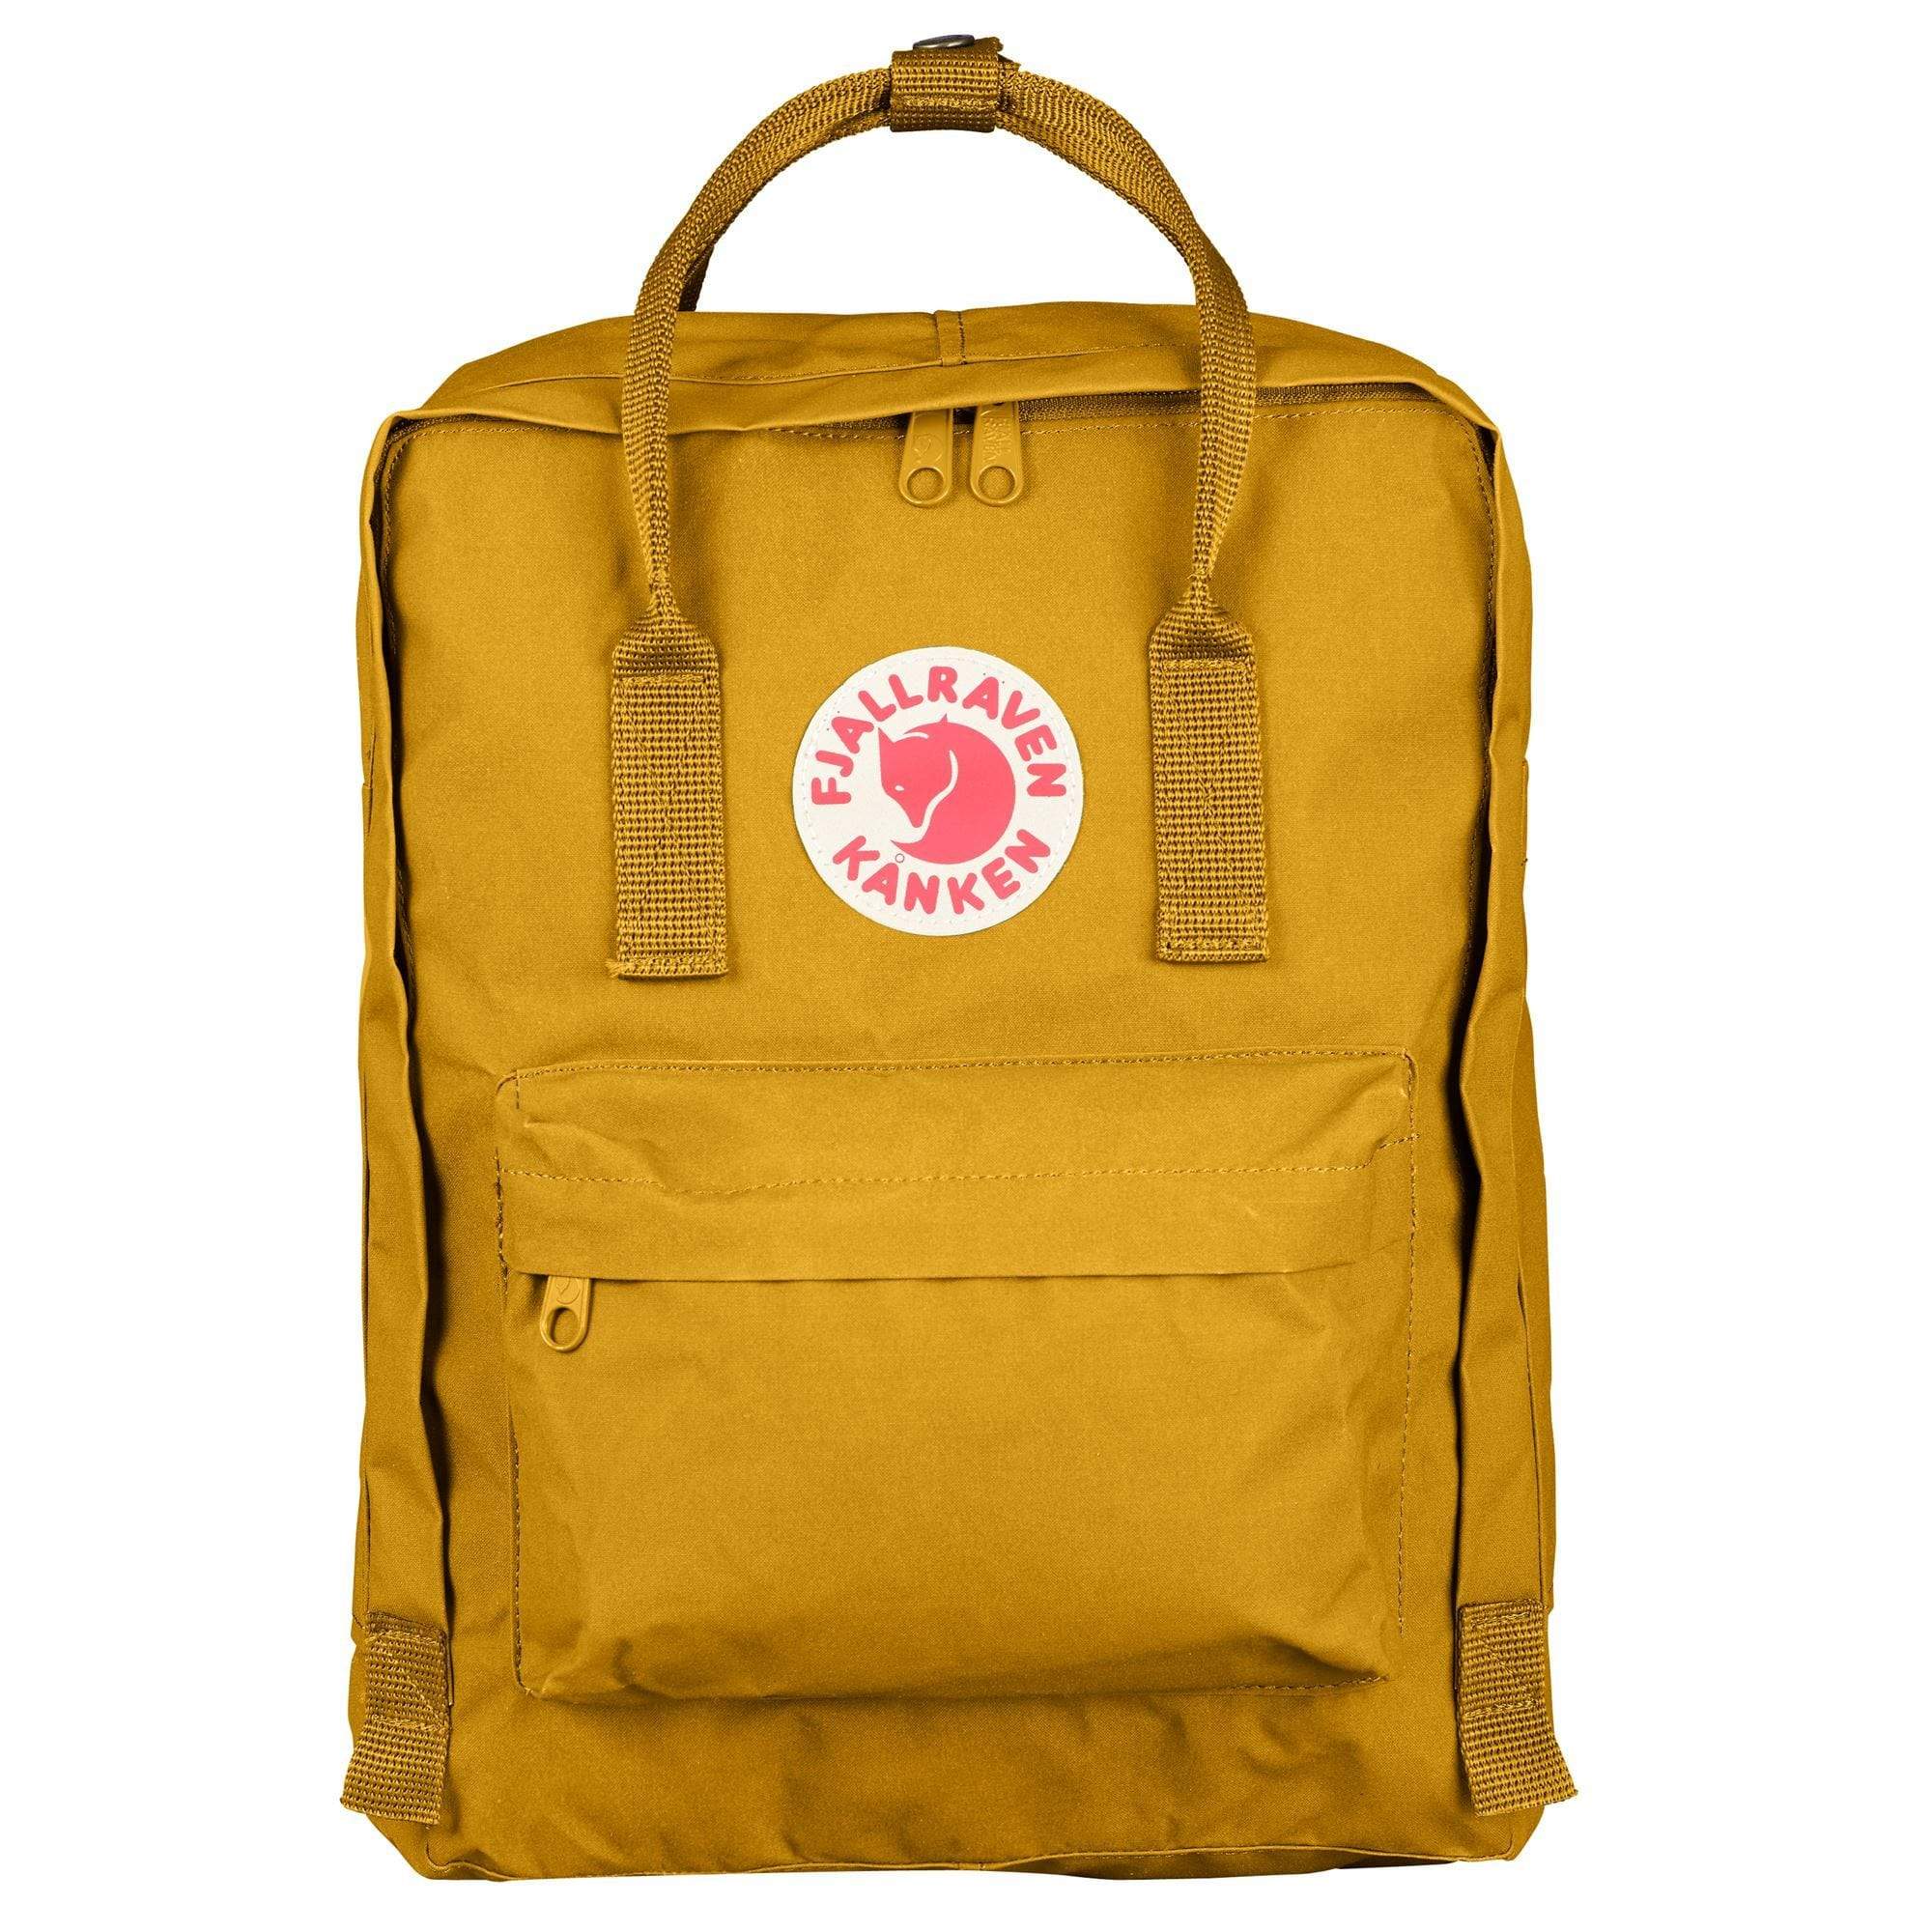 Fjallraven Backpack One Size / Ochre Yellow Fjallraven, Kanken Backpack (Ochre)